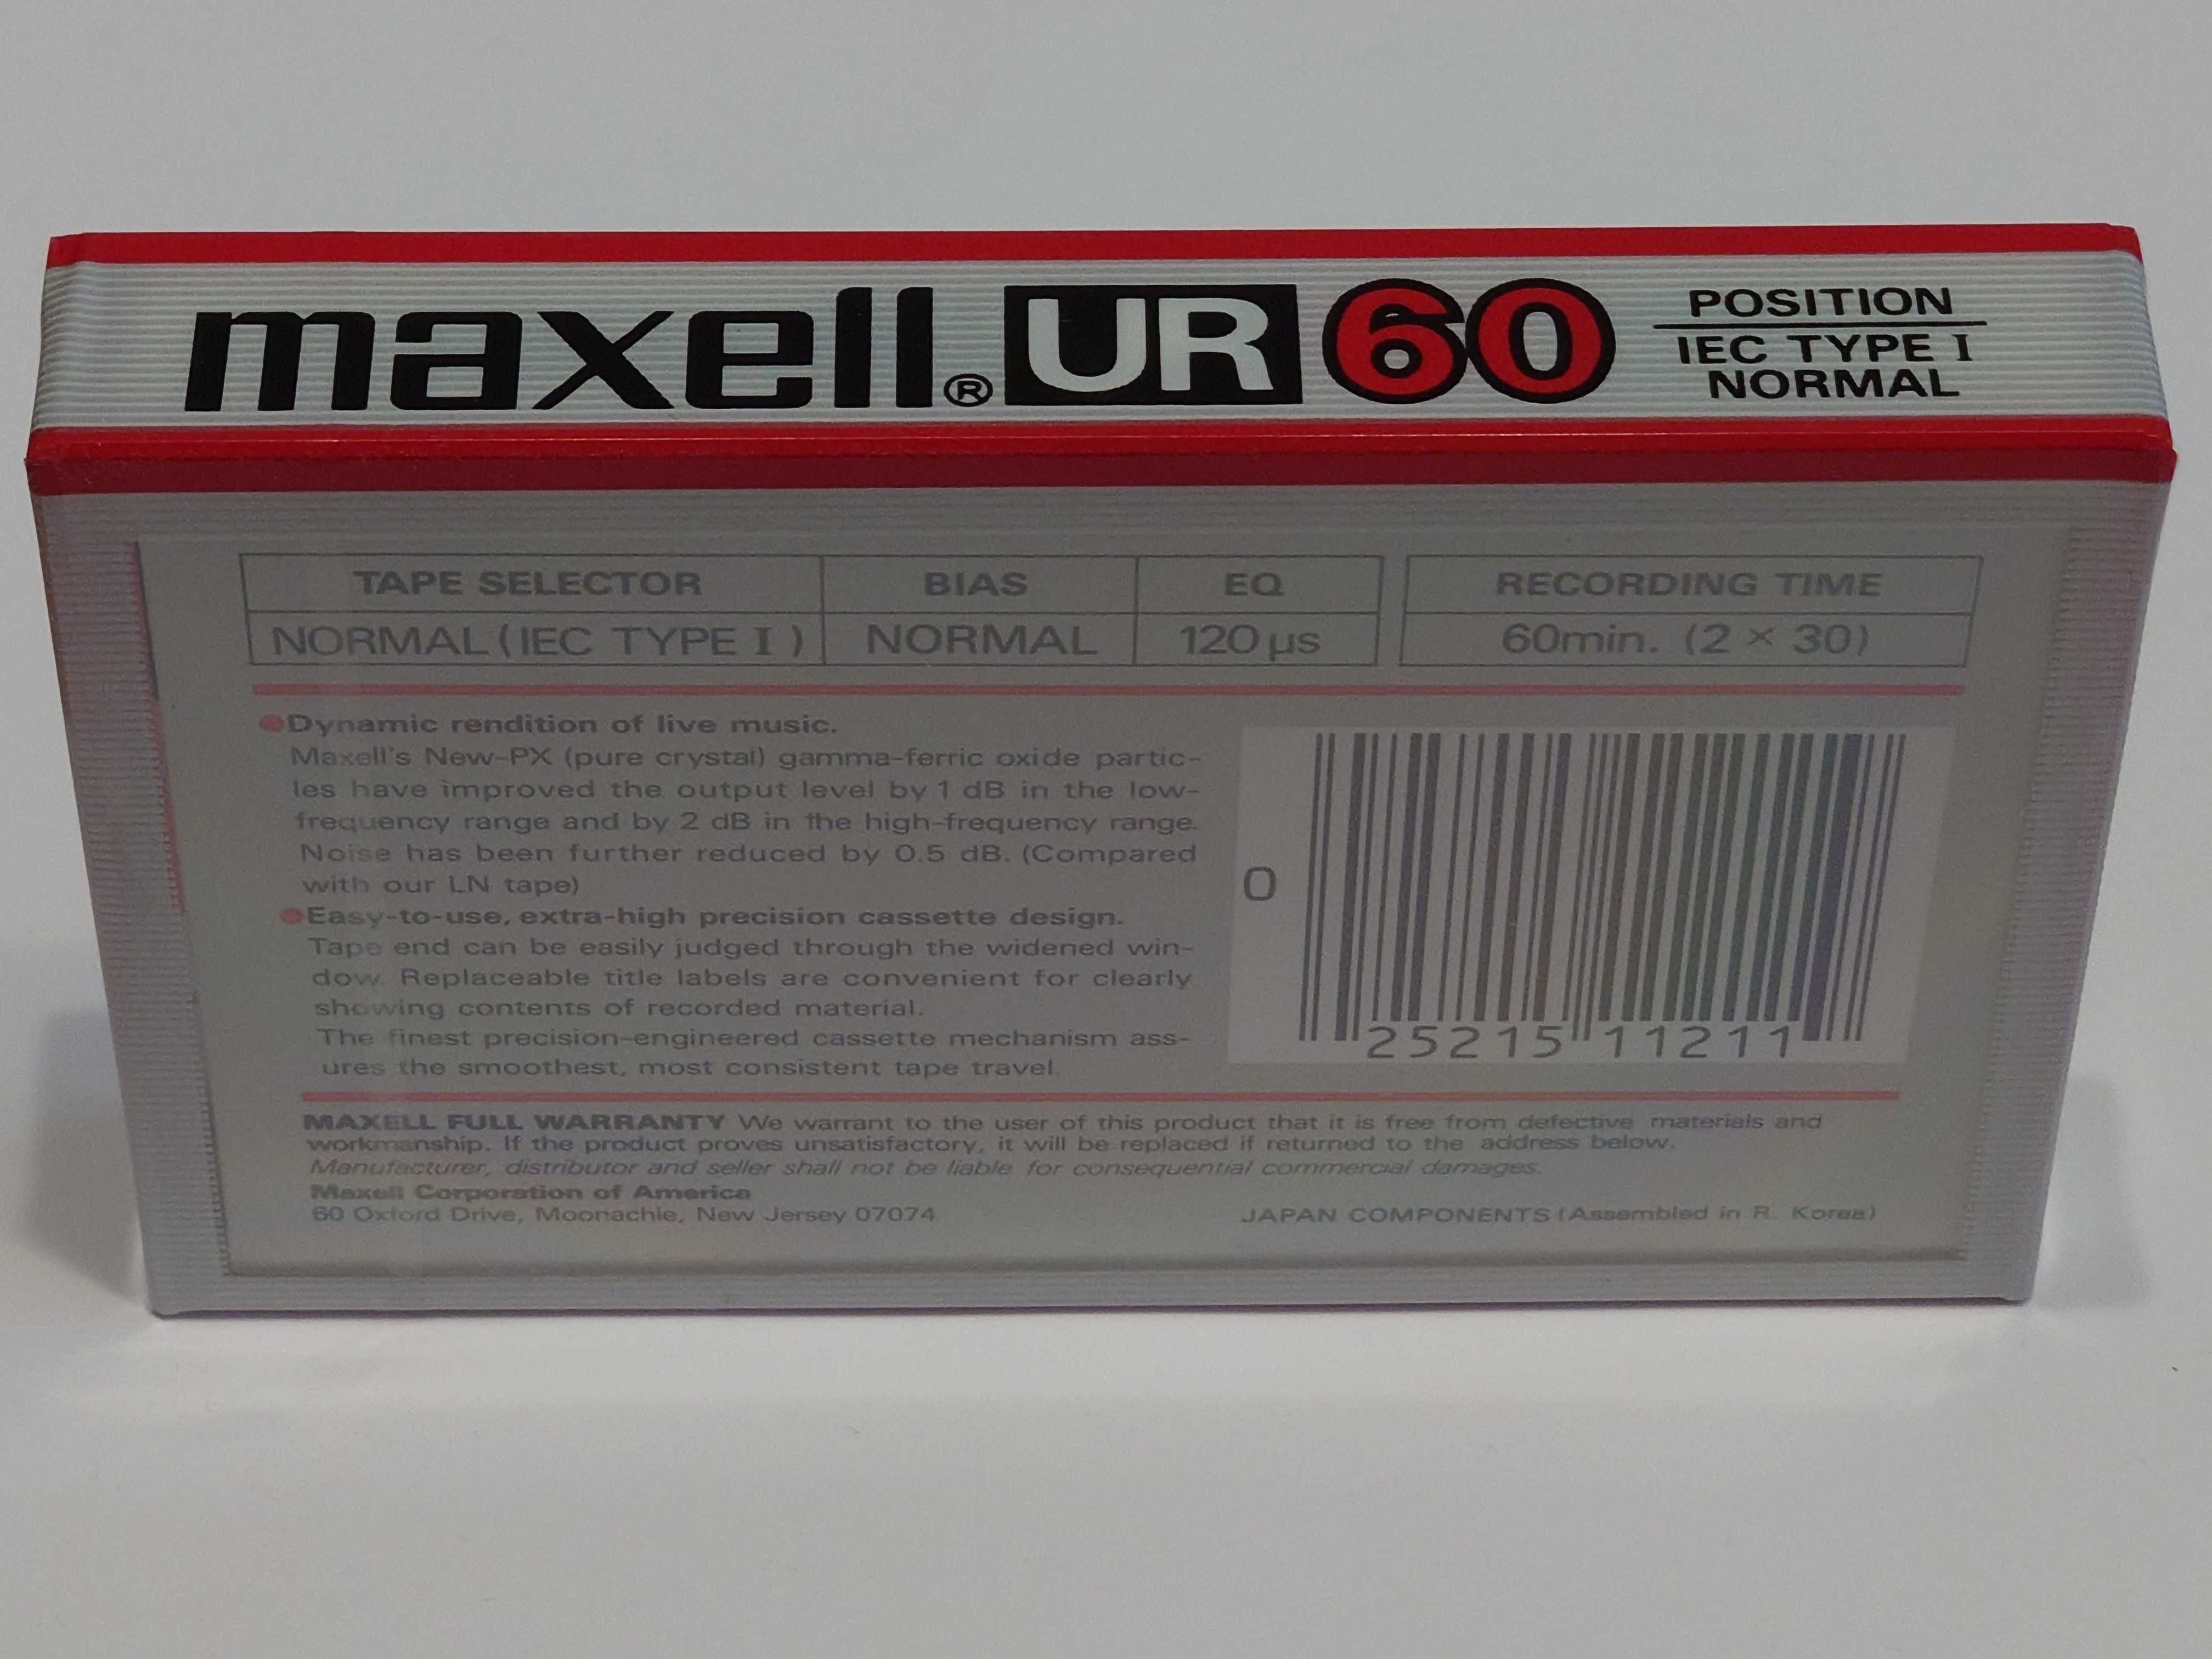 Maxell UR 60 model na rok 1985 na rynek Amerykański